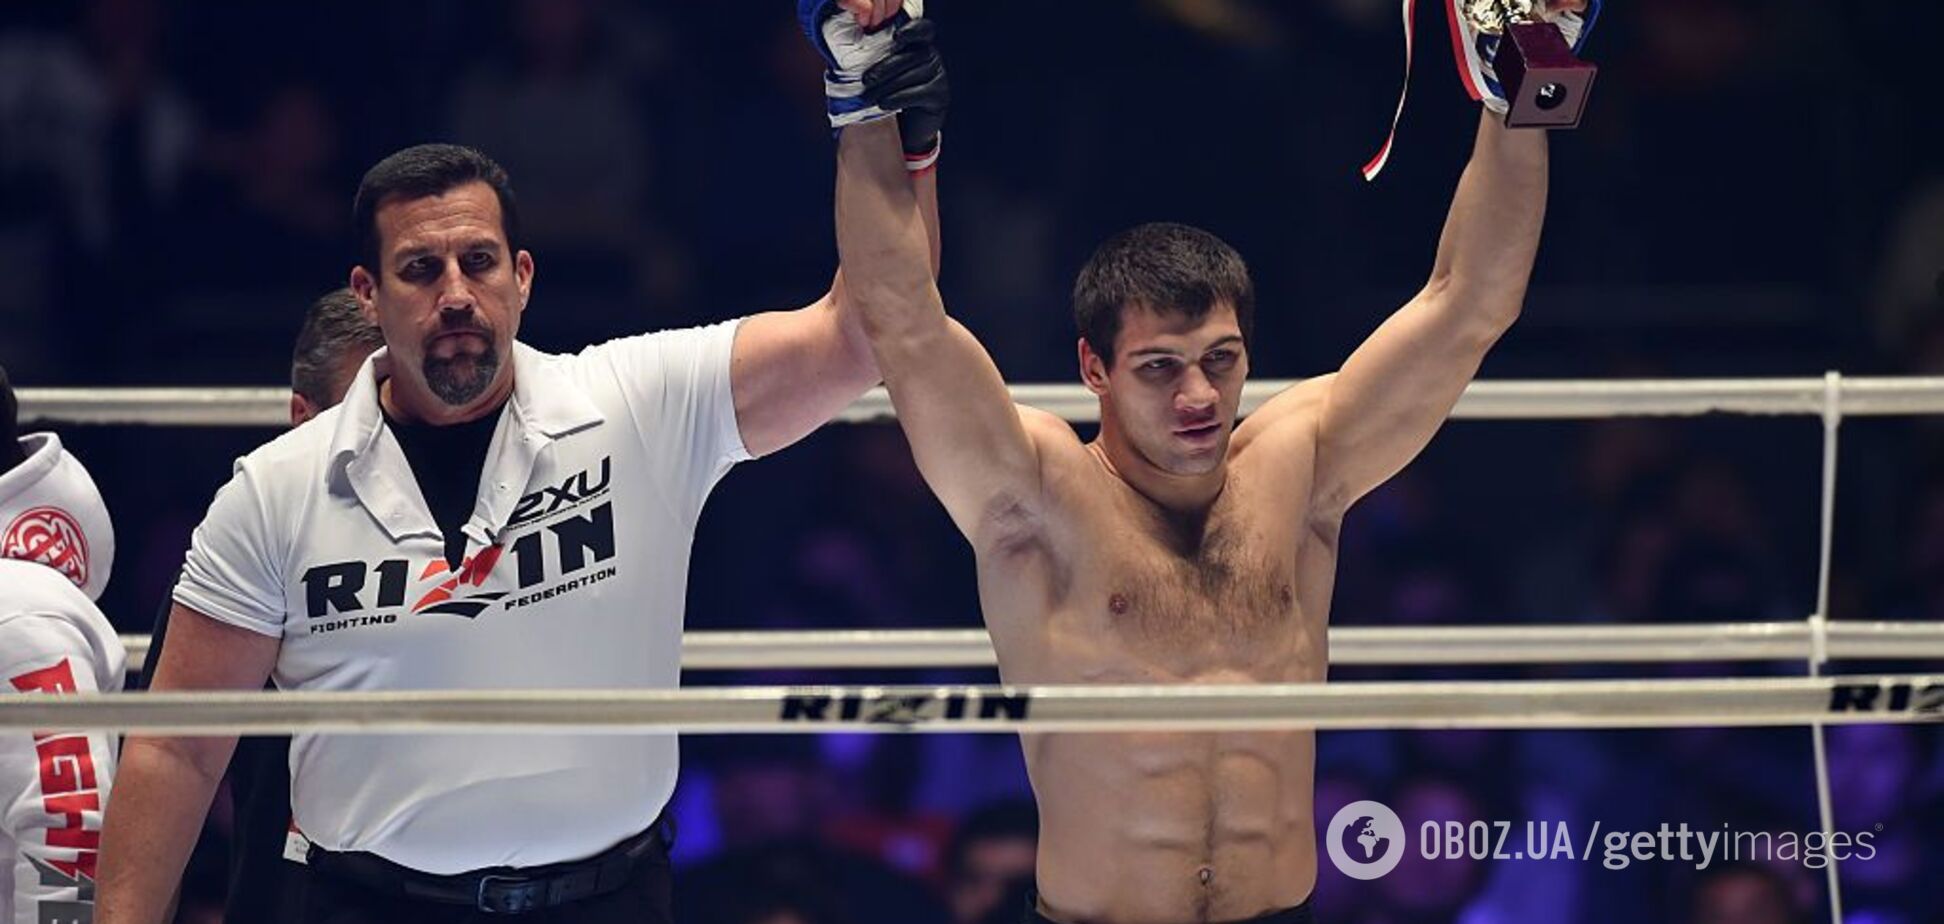 Боец MMA выжил после тяжелого нокдауна и задушил соперника - видеофакт